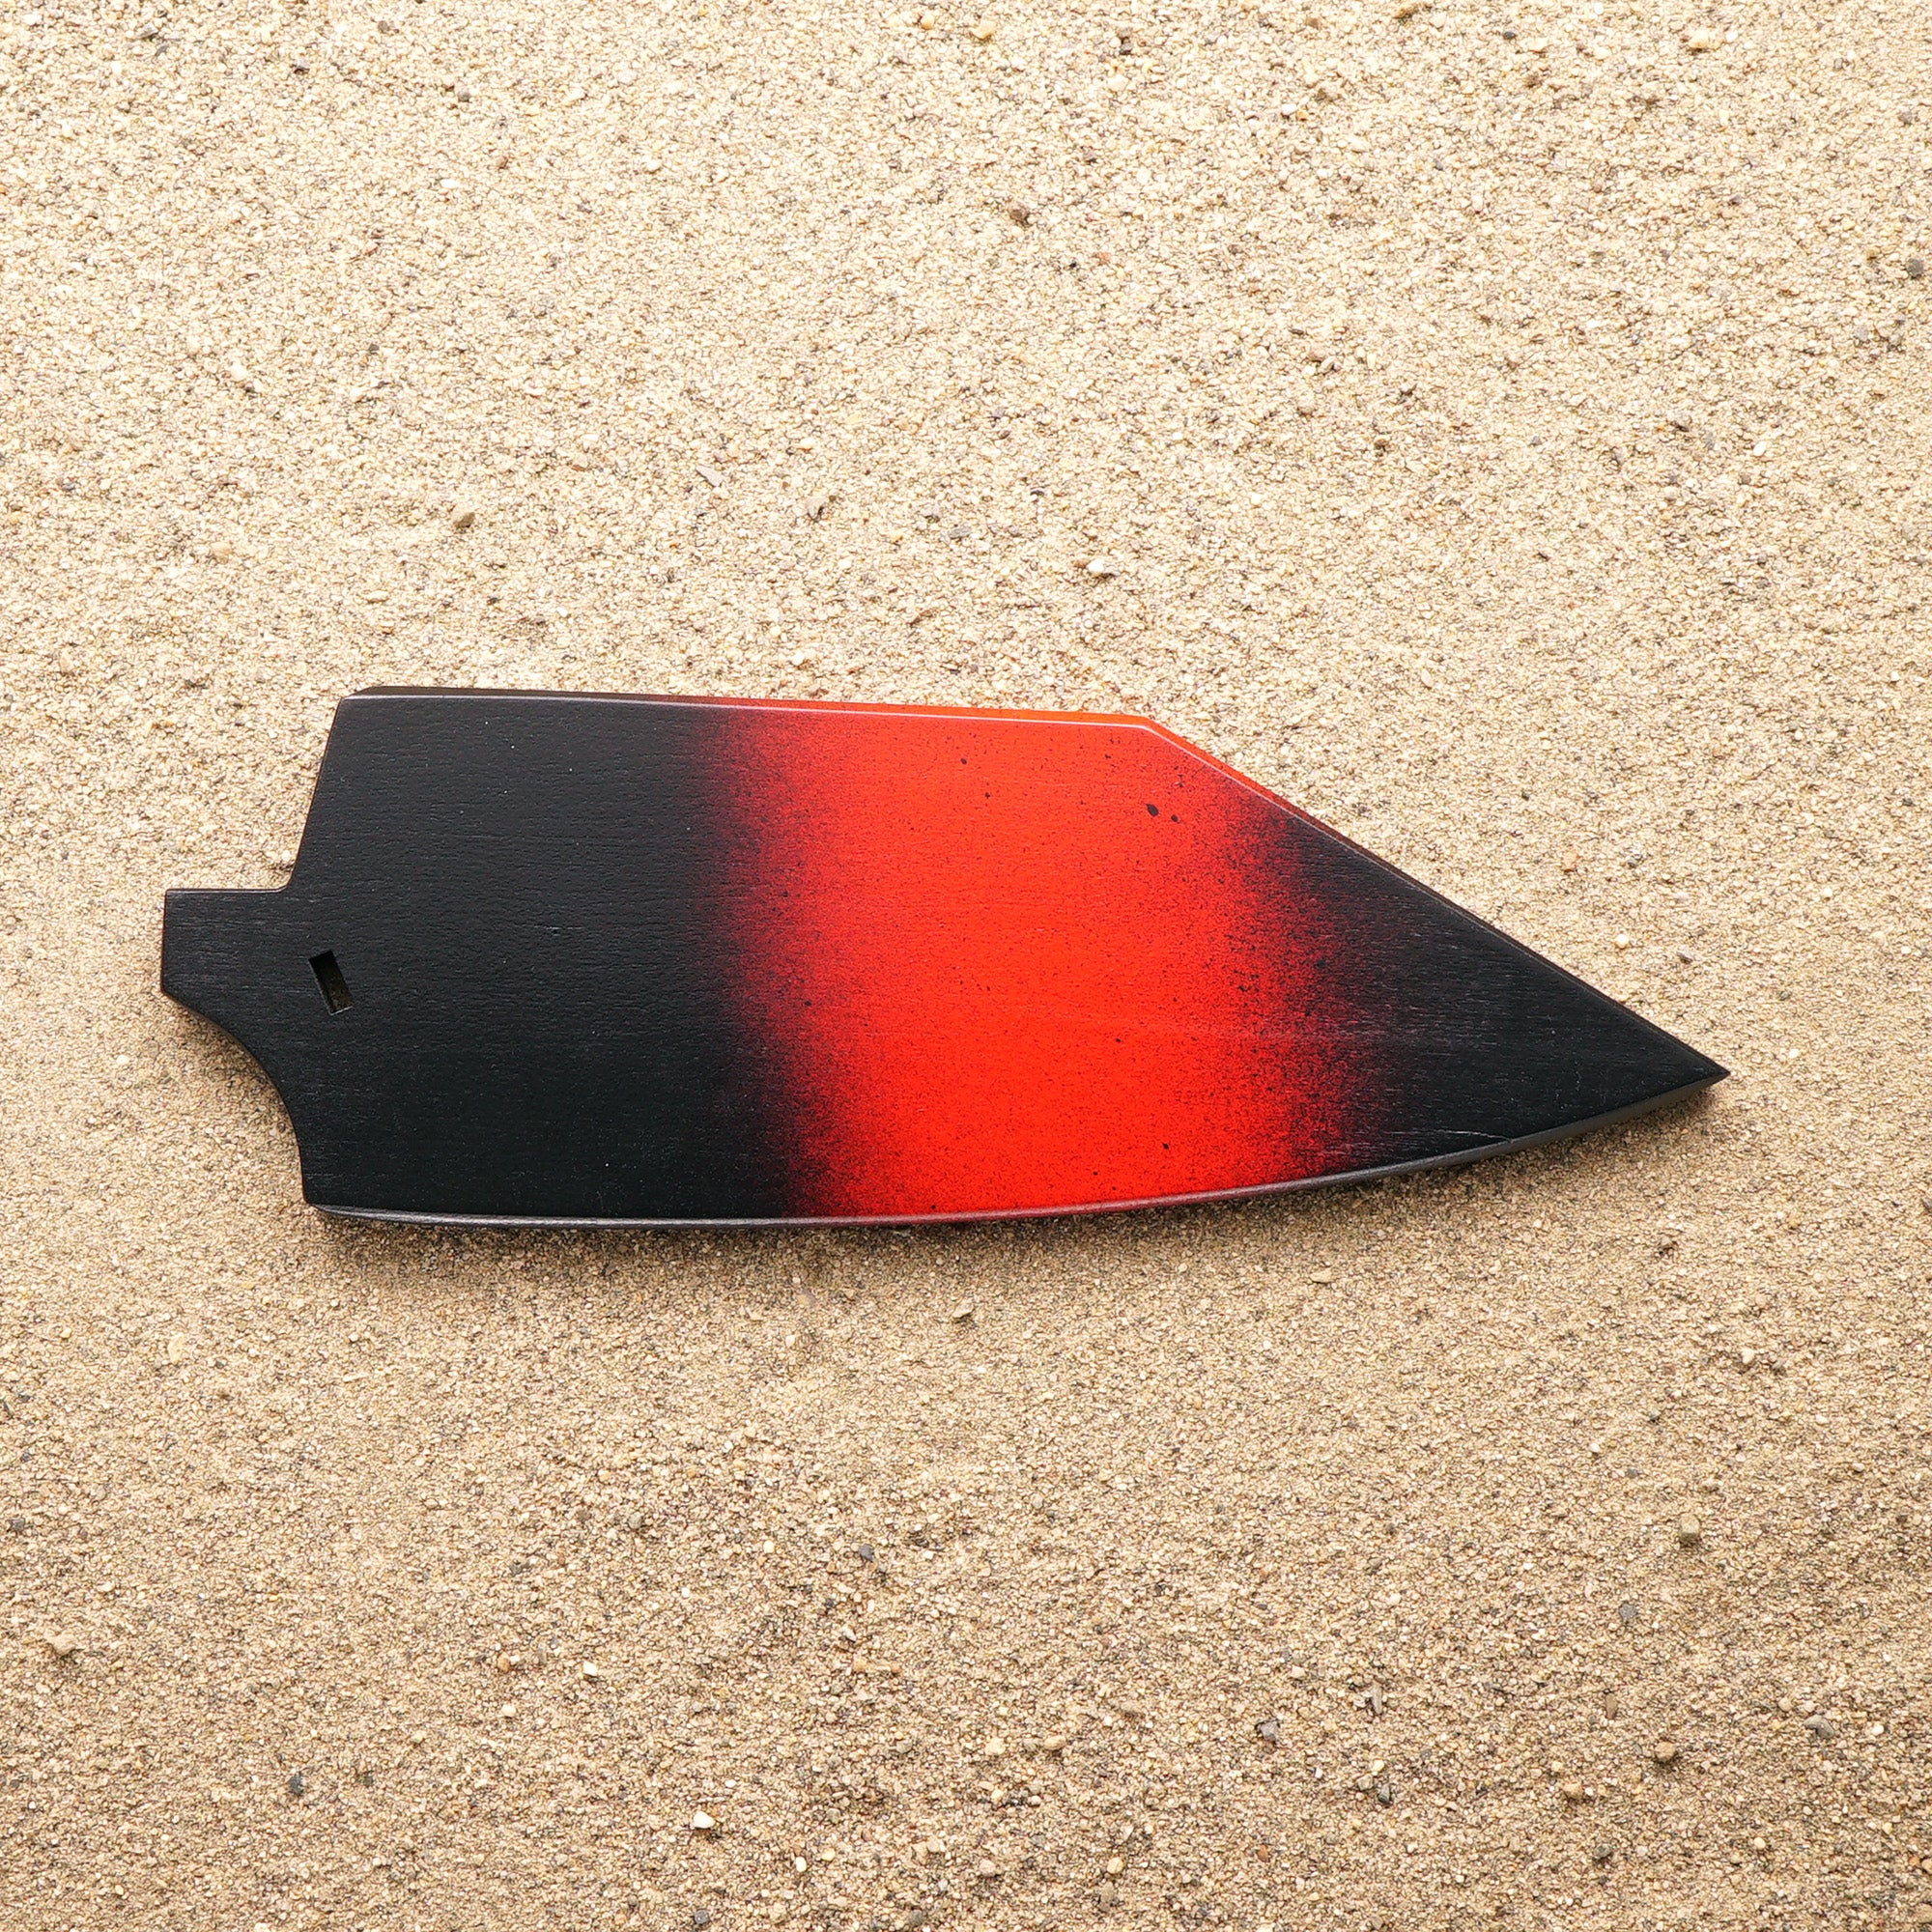 Red and black wood saya knife sheath for Town Cutler Baja Chopper knife.